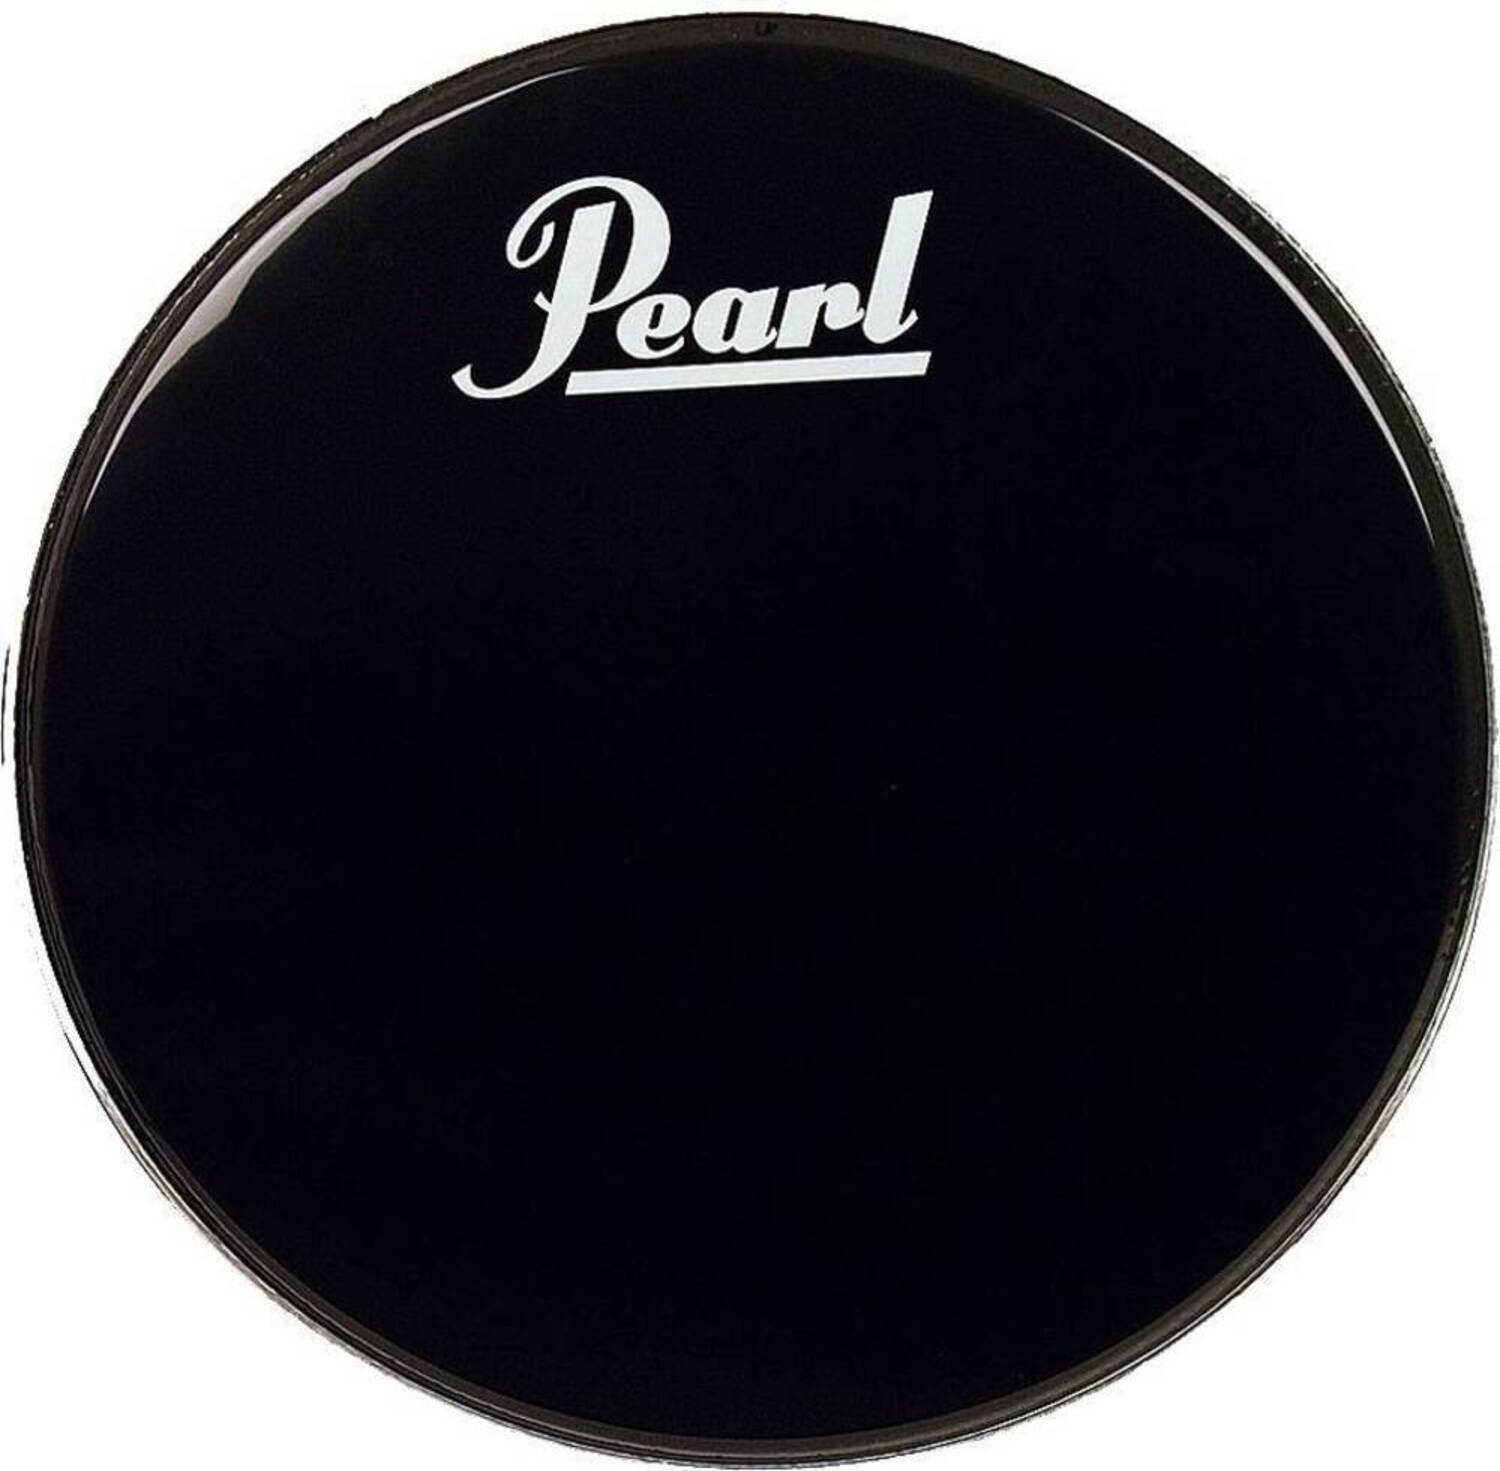 Прочие аксессуары для ударных инструментов Pearl EB-24BDPL стойки для ударных инструментов pearl s 1030